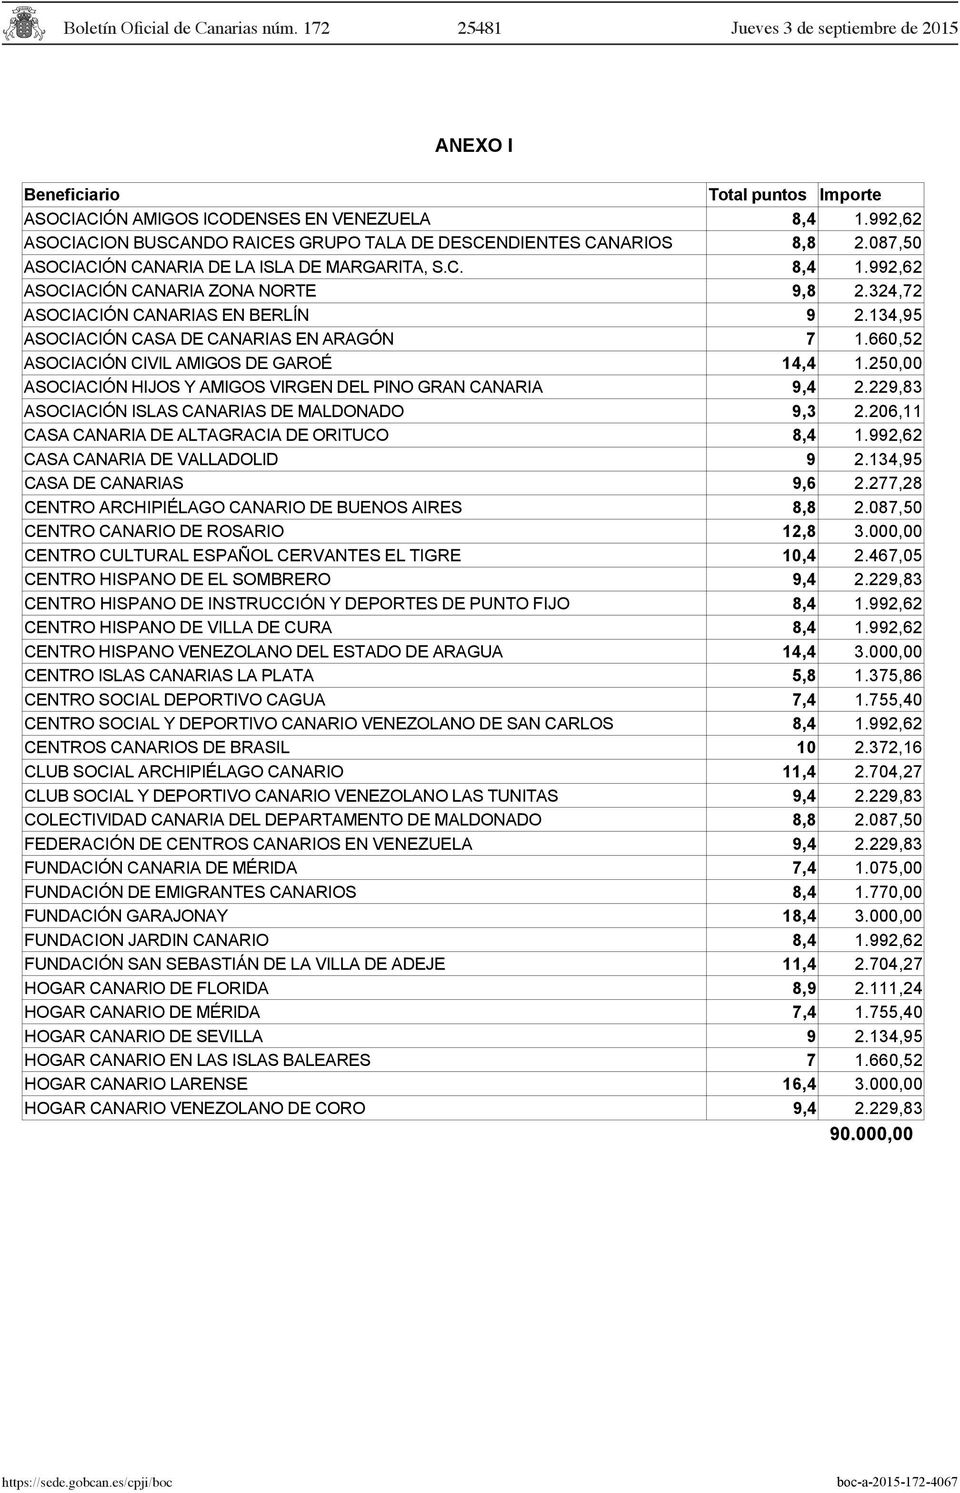 660,52 ASOCIACIÓN CIVIL AMIGOS DE GAROÉ 14,4 1.250,00 ASOCIACIÓN HIJOS Y AMIGOS VIRGEN DEL PINO GRAN CANARIA 9,4 2.229,83 ASOCIACIÓN ISLAS CANARIAS DE MALDONADO 9,3 2.